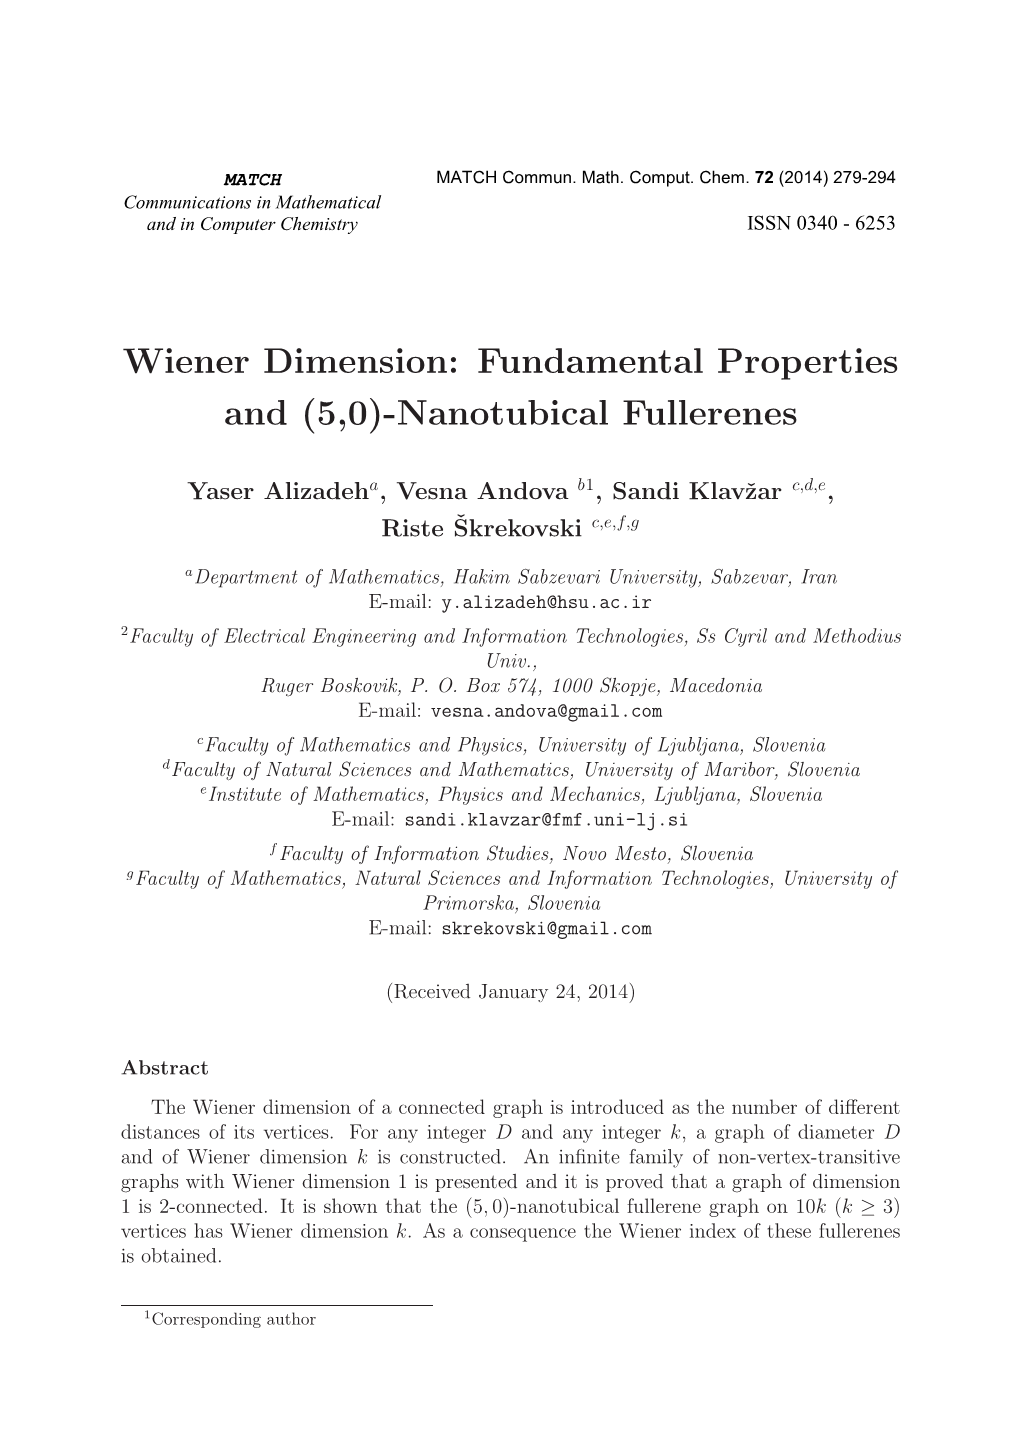 Fundamental Properties and (5,0)-Nanotubical Fullerenes